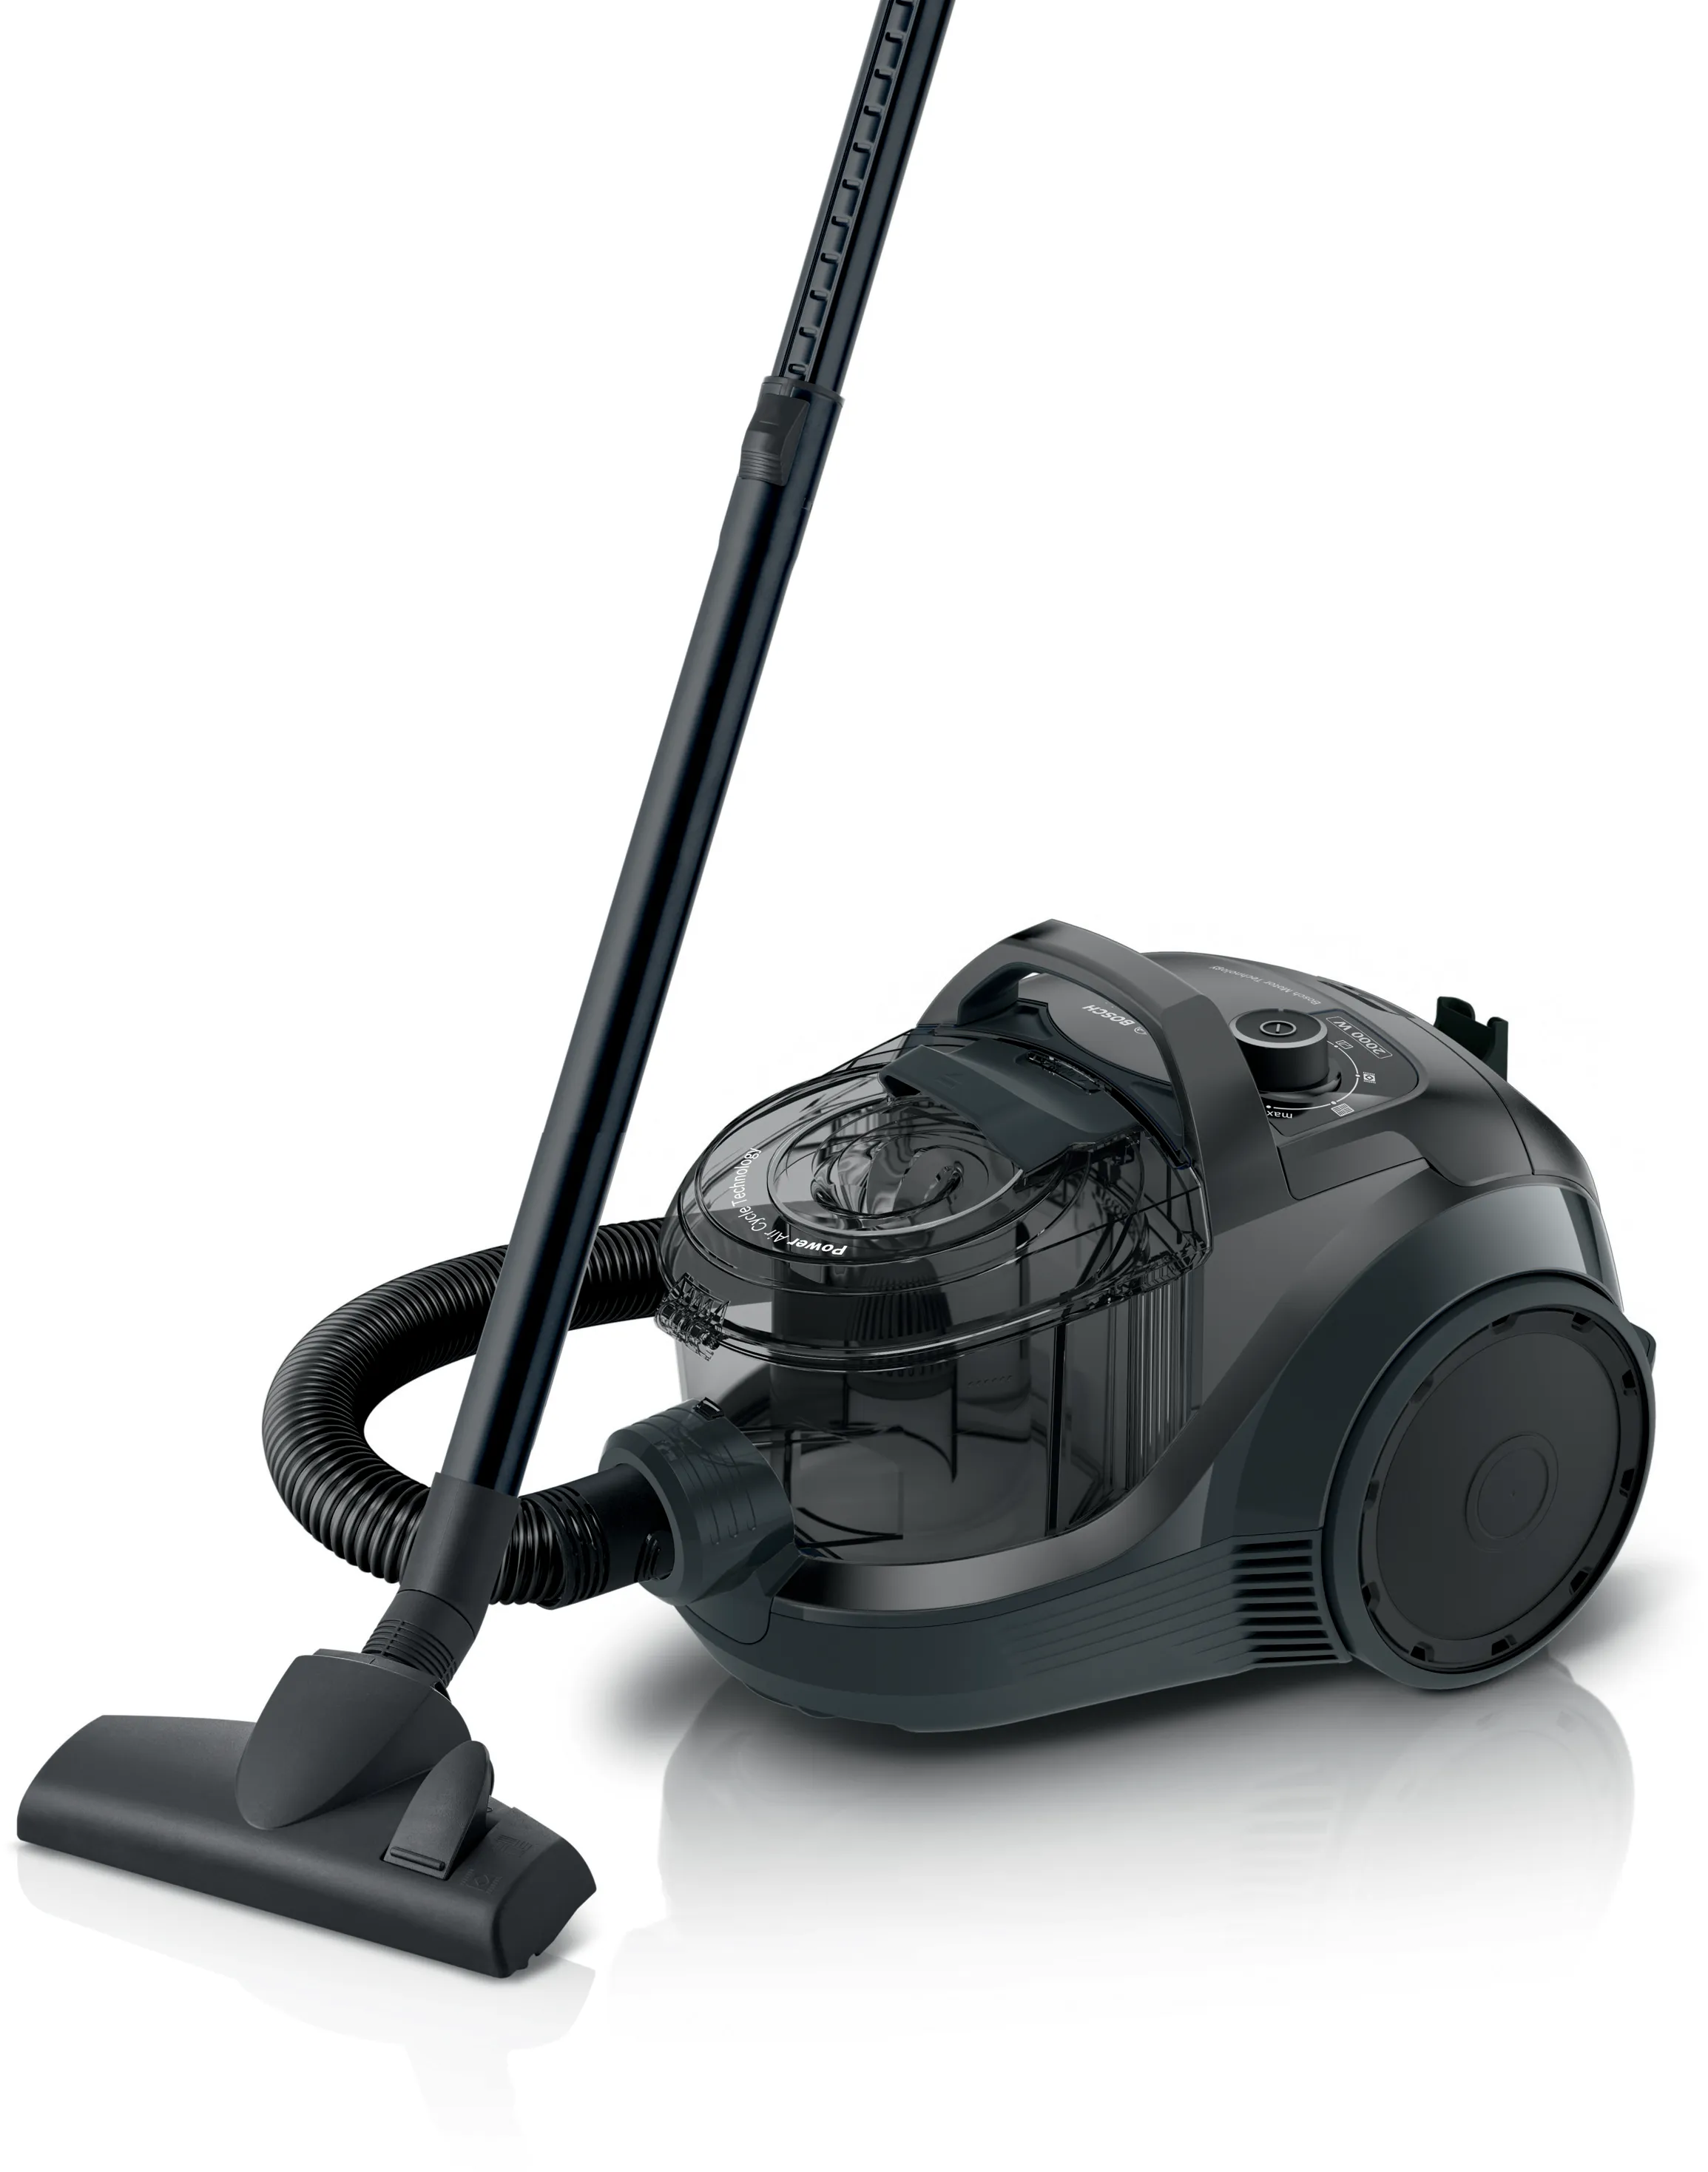 ซีรี่ 4 Bagless vacuum cleaner Serie 4 สีดำ 